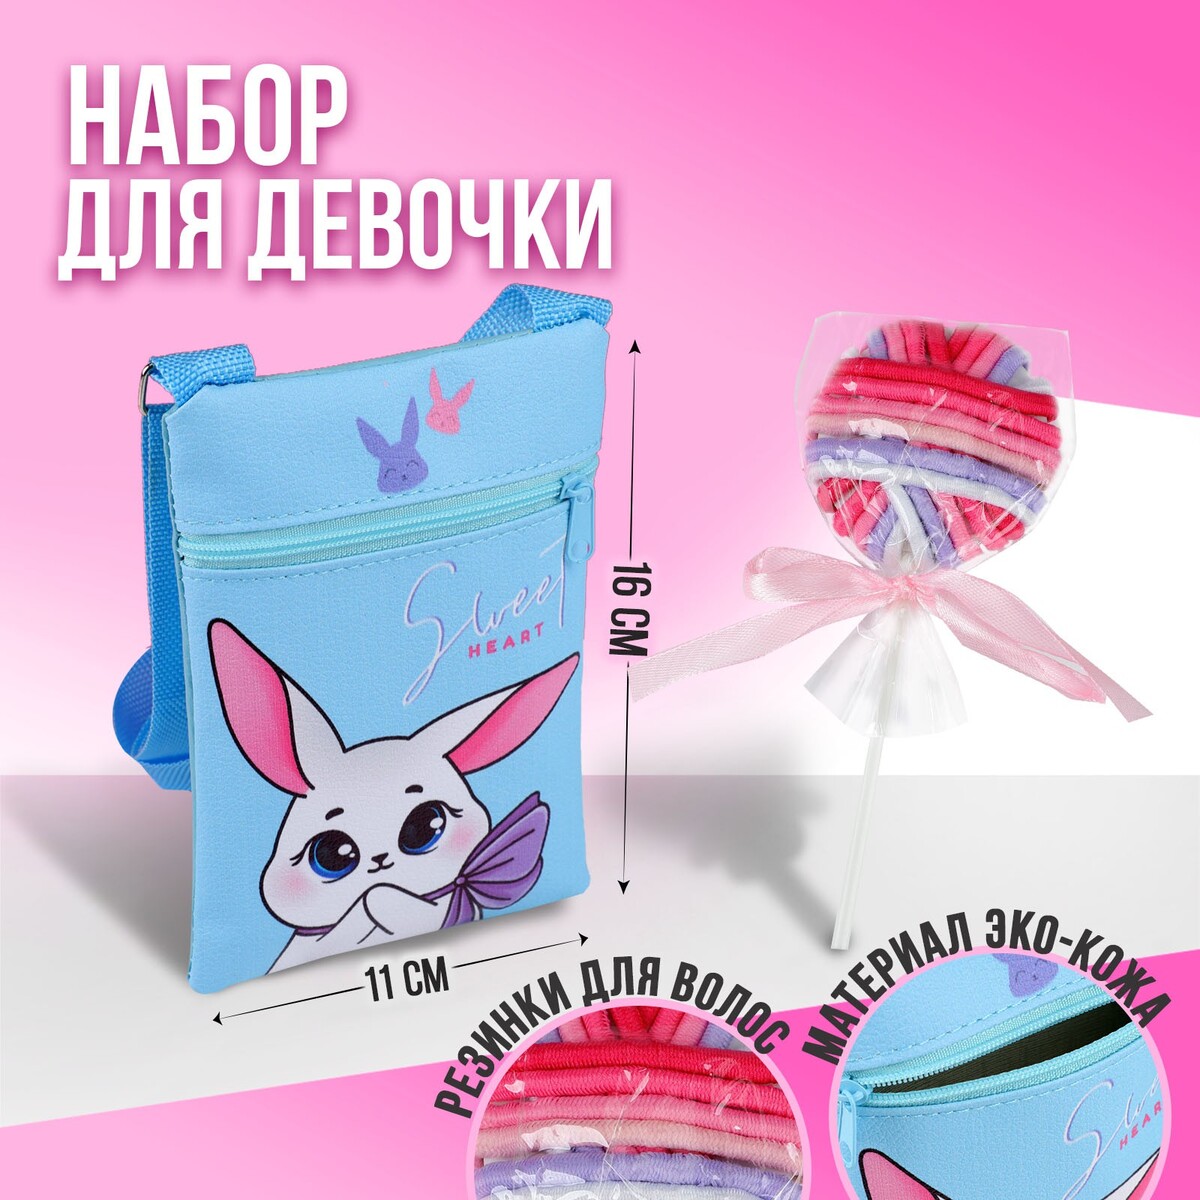 Набор для девочки белый зайчик: сумка и резинки для волос, цвет голубой/розовый набор для творчества раскрась светильник зайчик